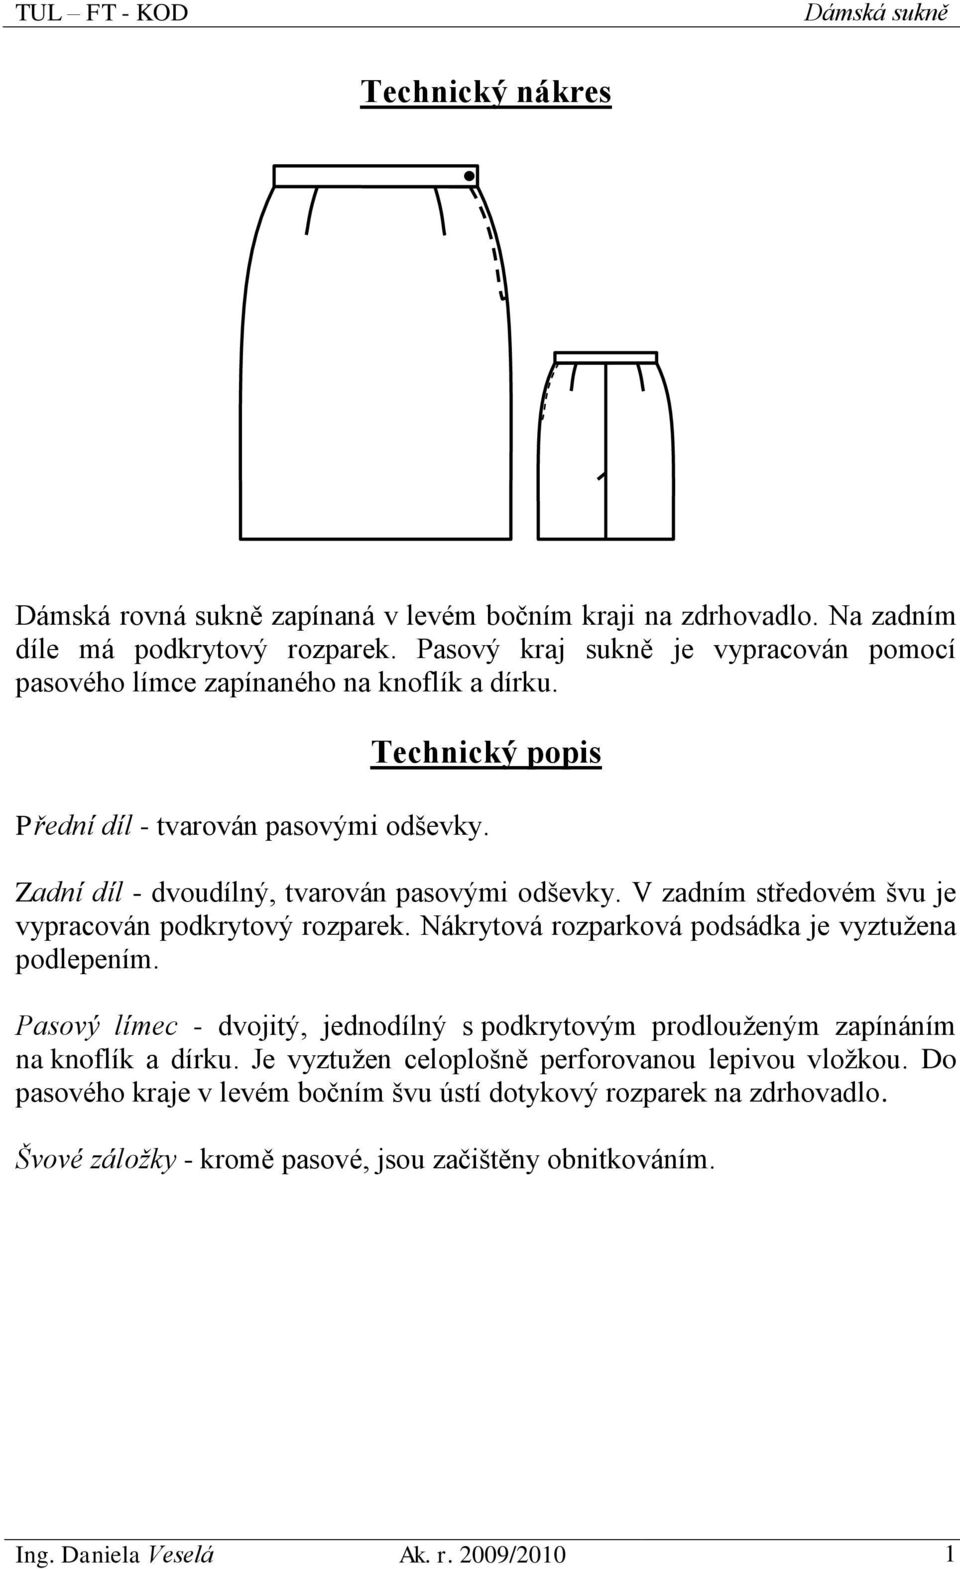 Technický nákres. Technický popis - PDF Stažení zdarma